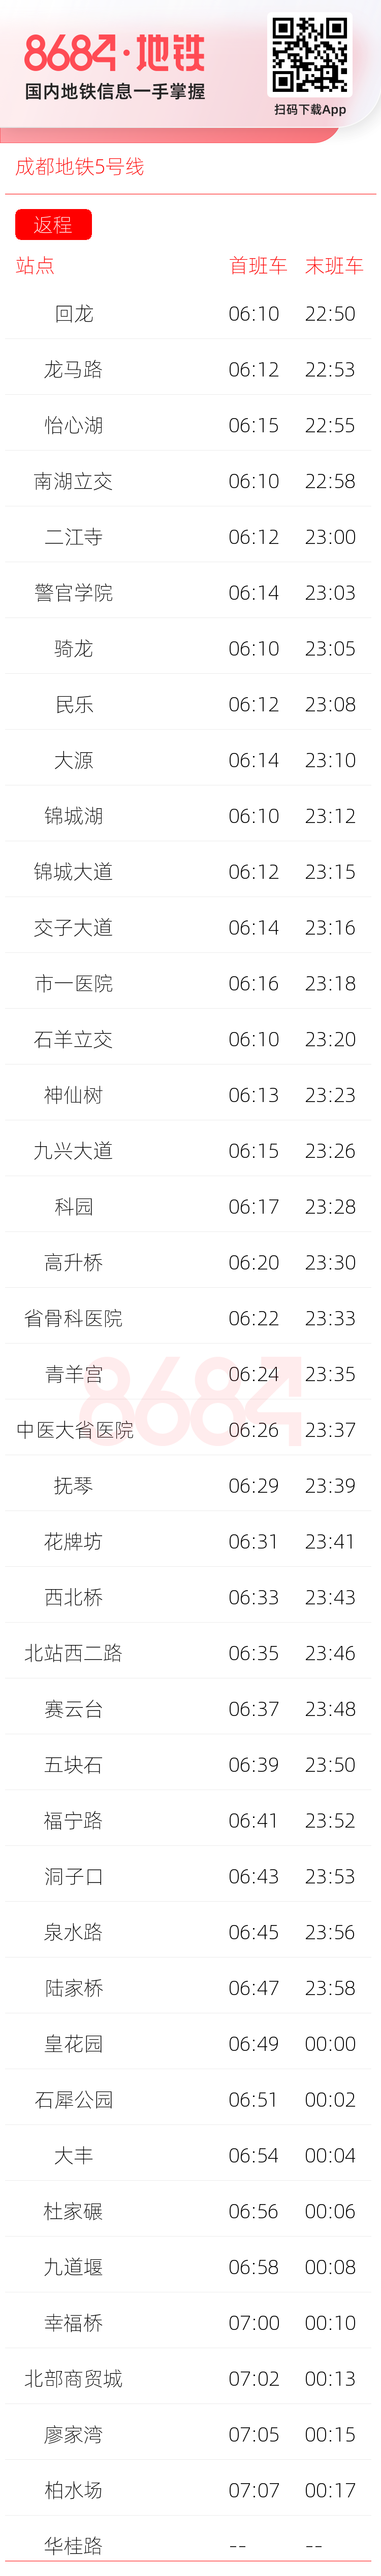 成都地铁5号线运营时间表